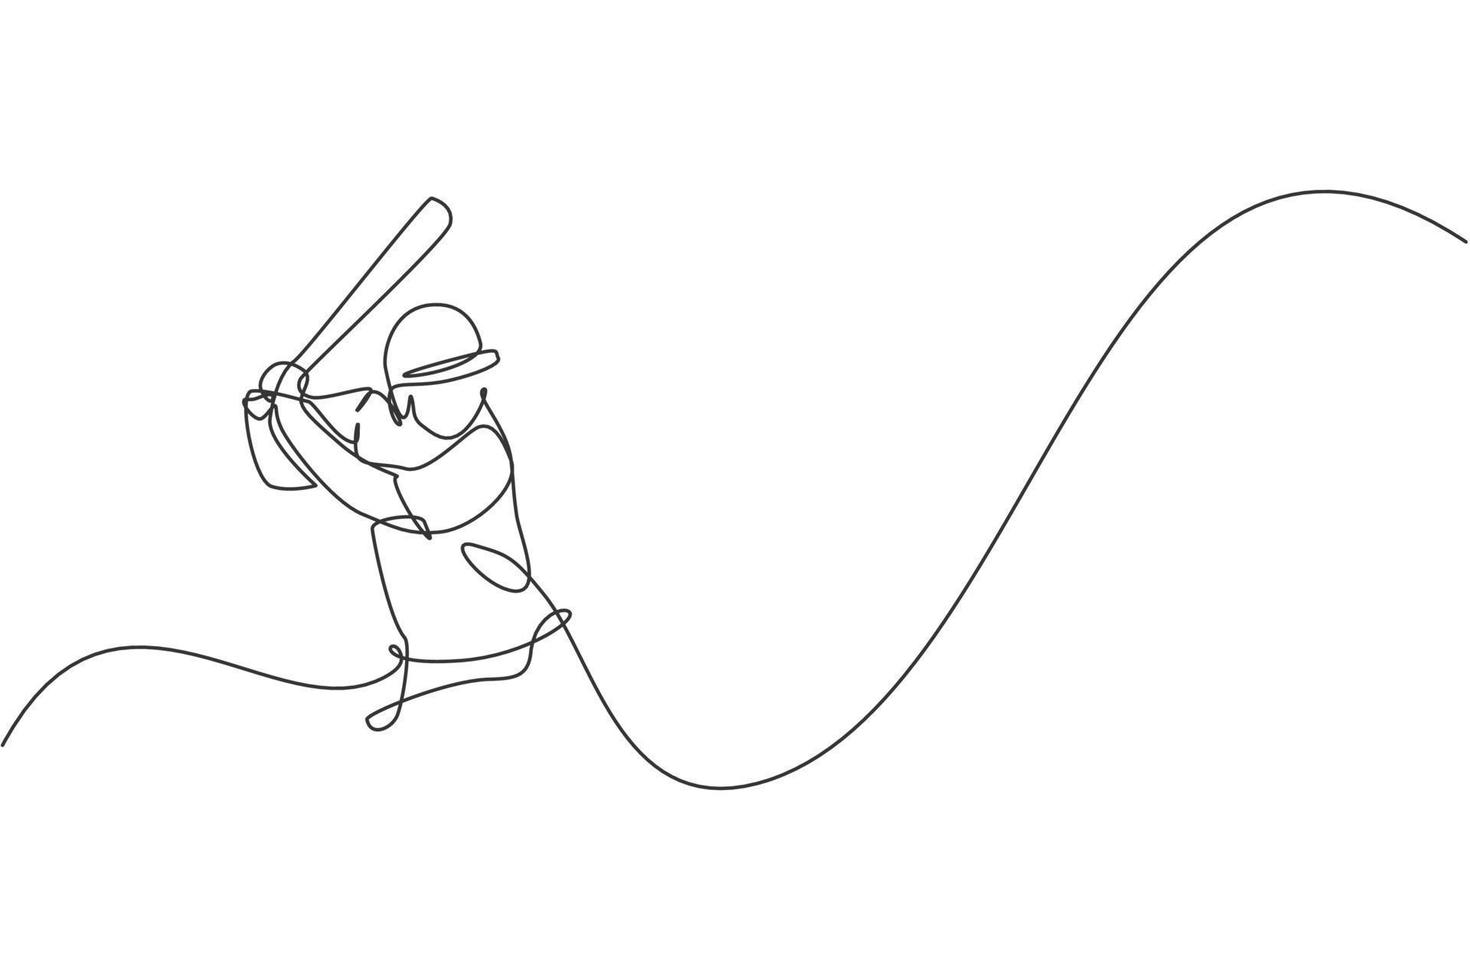 einzelne durchgehende Linienzeichnung des jungen agilen Baseballspieler-Fokustrainings, um den Ball zu schlagen. Sportübungskonzept. trendige Designvektorillustration mit einer Linie für Baseball-Werbemedien vektor